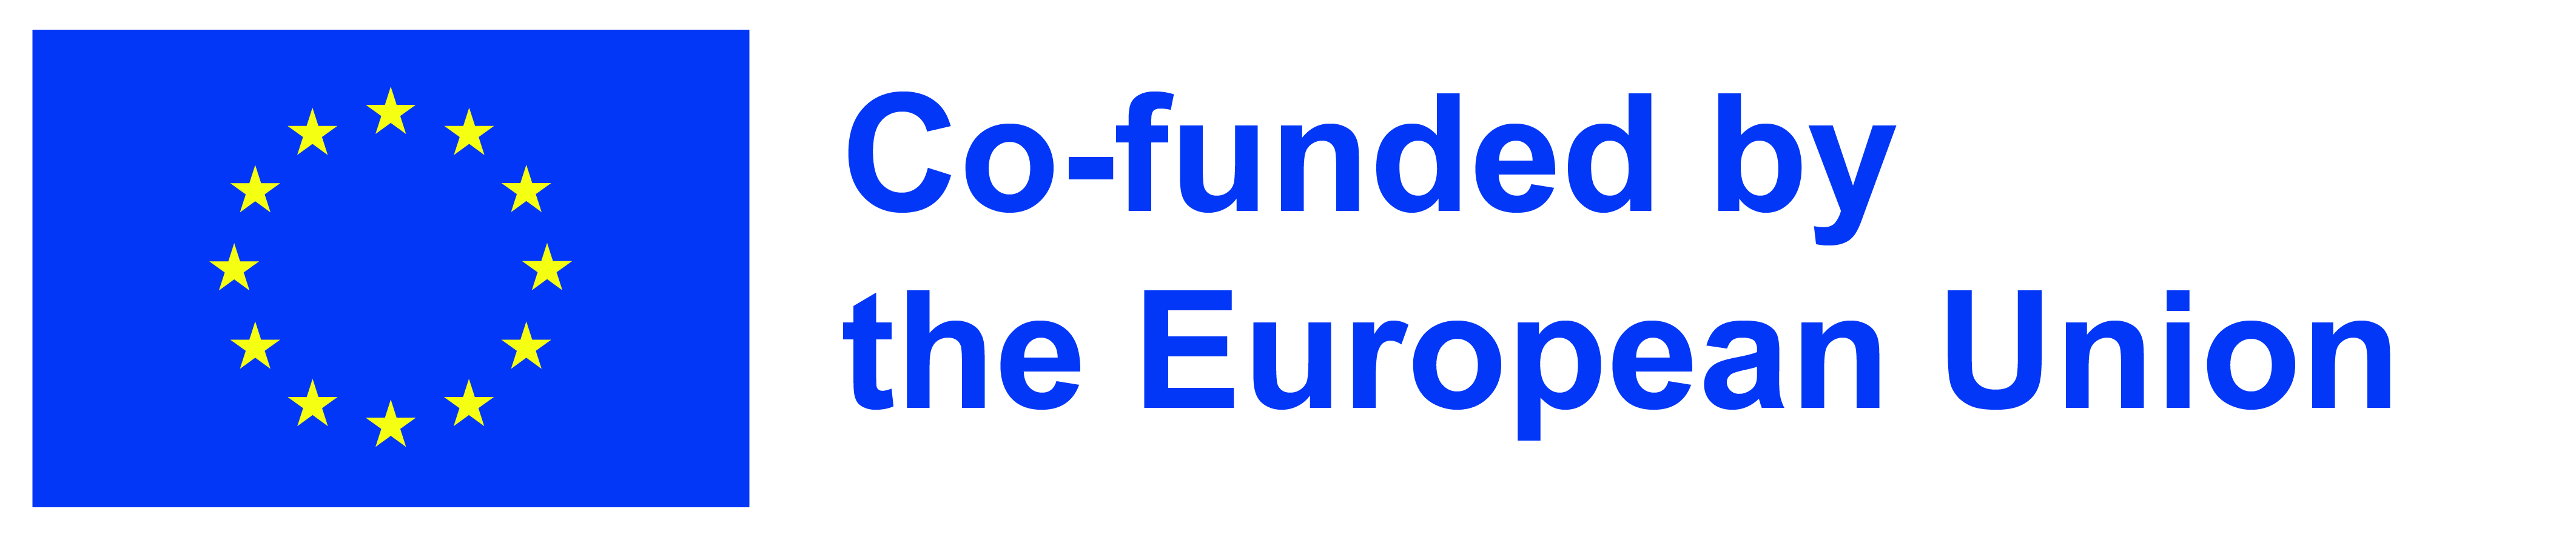 EU funded logo